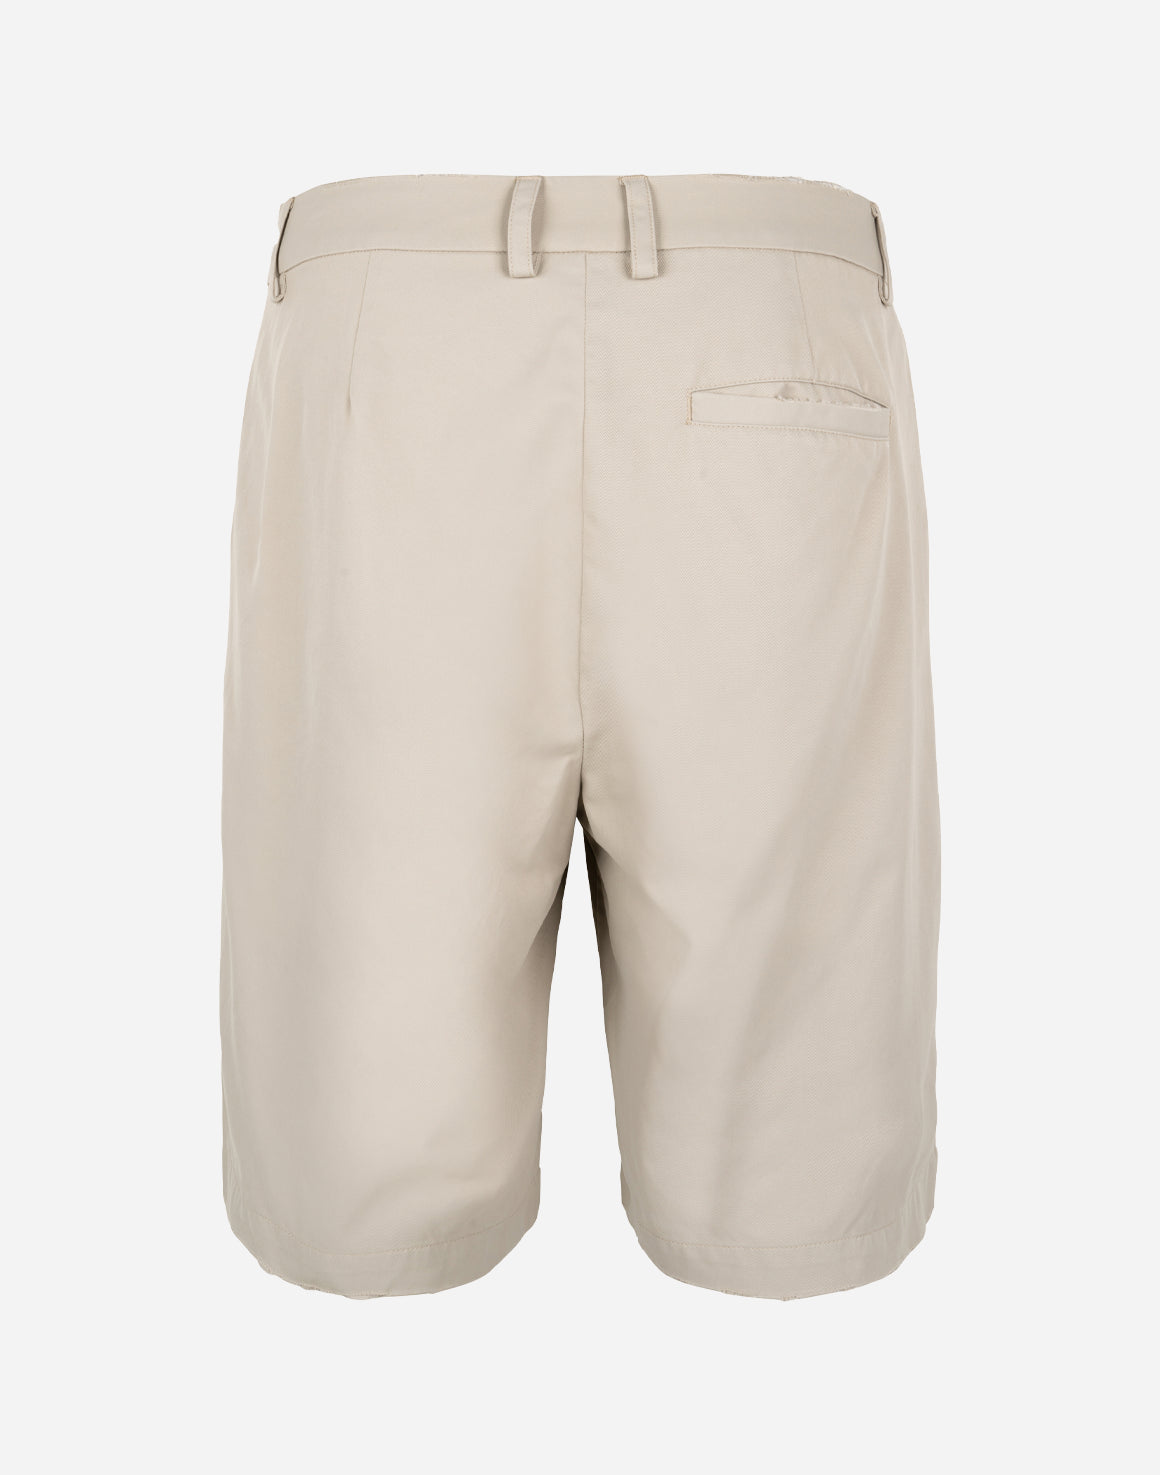 Suit Shorts - Sand - Han kjøbenhavn - Kul og Koks